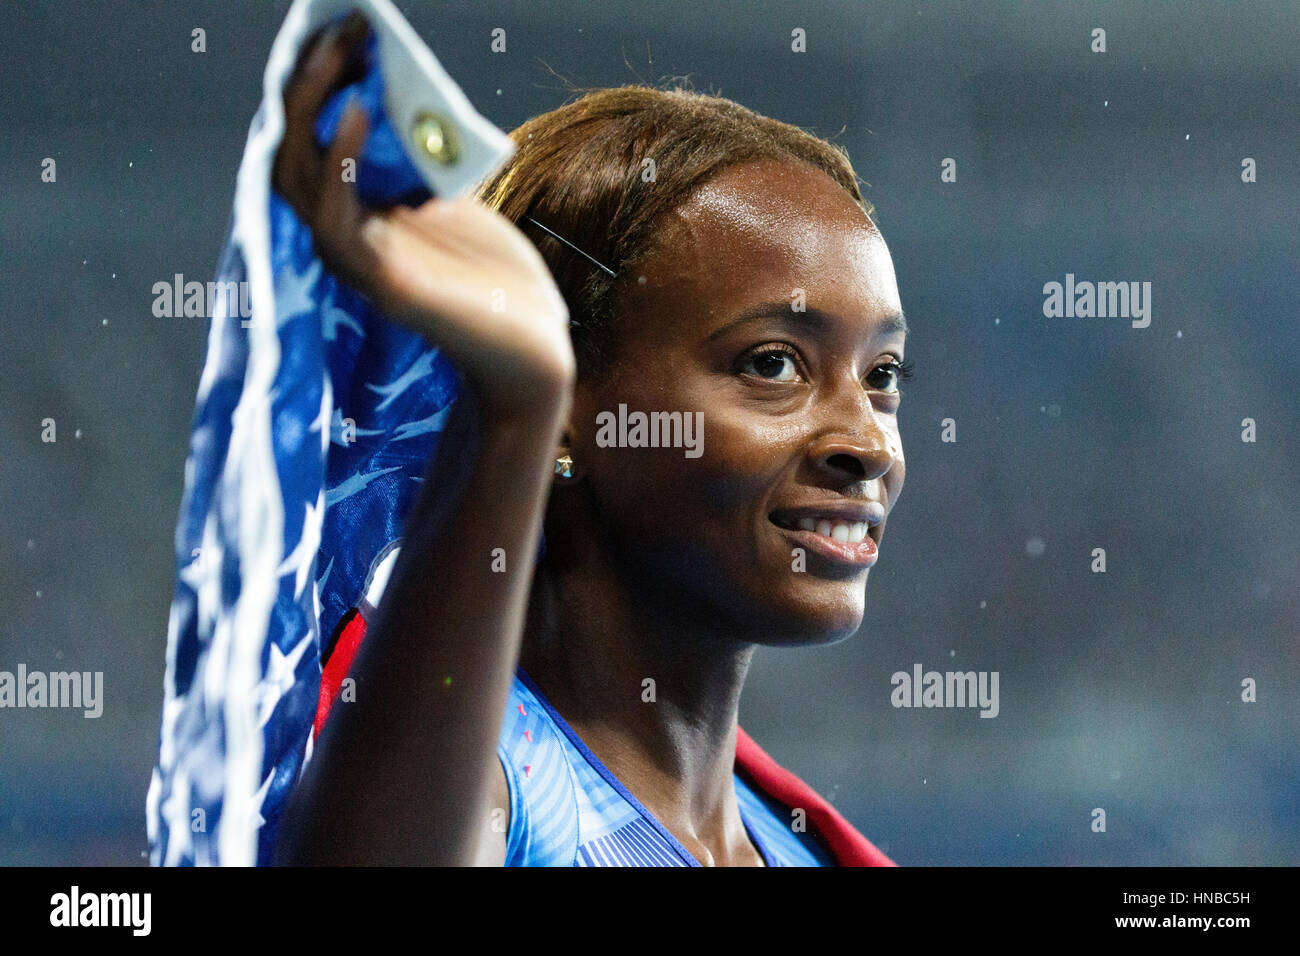 Rio de Janeiro, Brésil. 18 août 2016. L'athlétisme, Dalilah Muhammad (USA) remporte la médaille d'or dans le 400m haies finale au Jeux Olympiques 2016 Banque D'Images